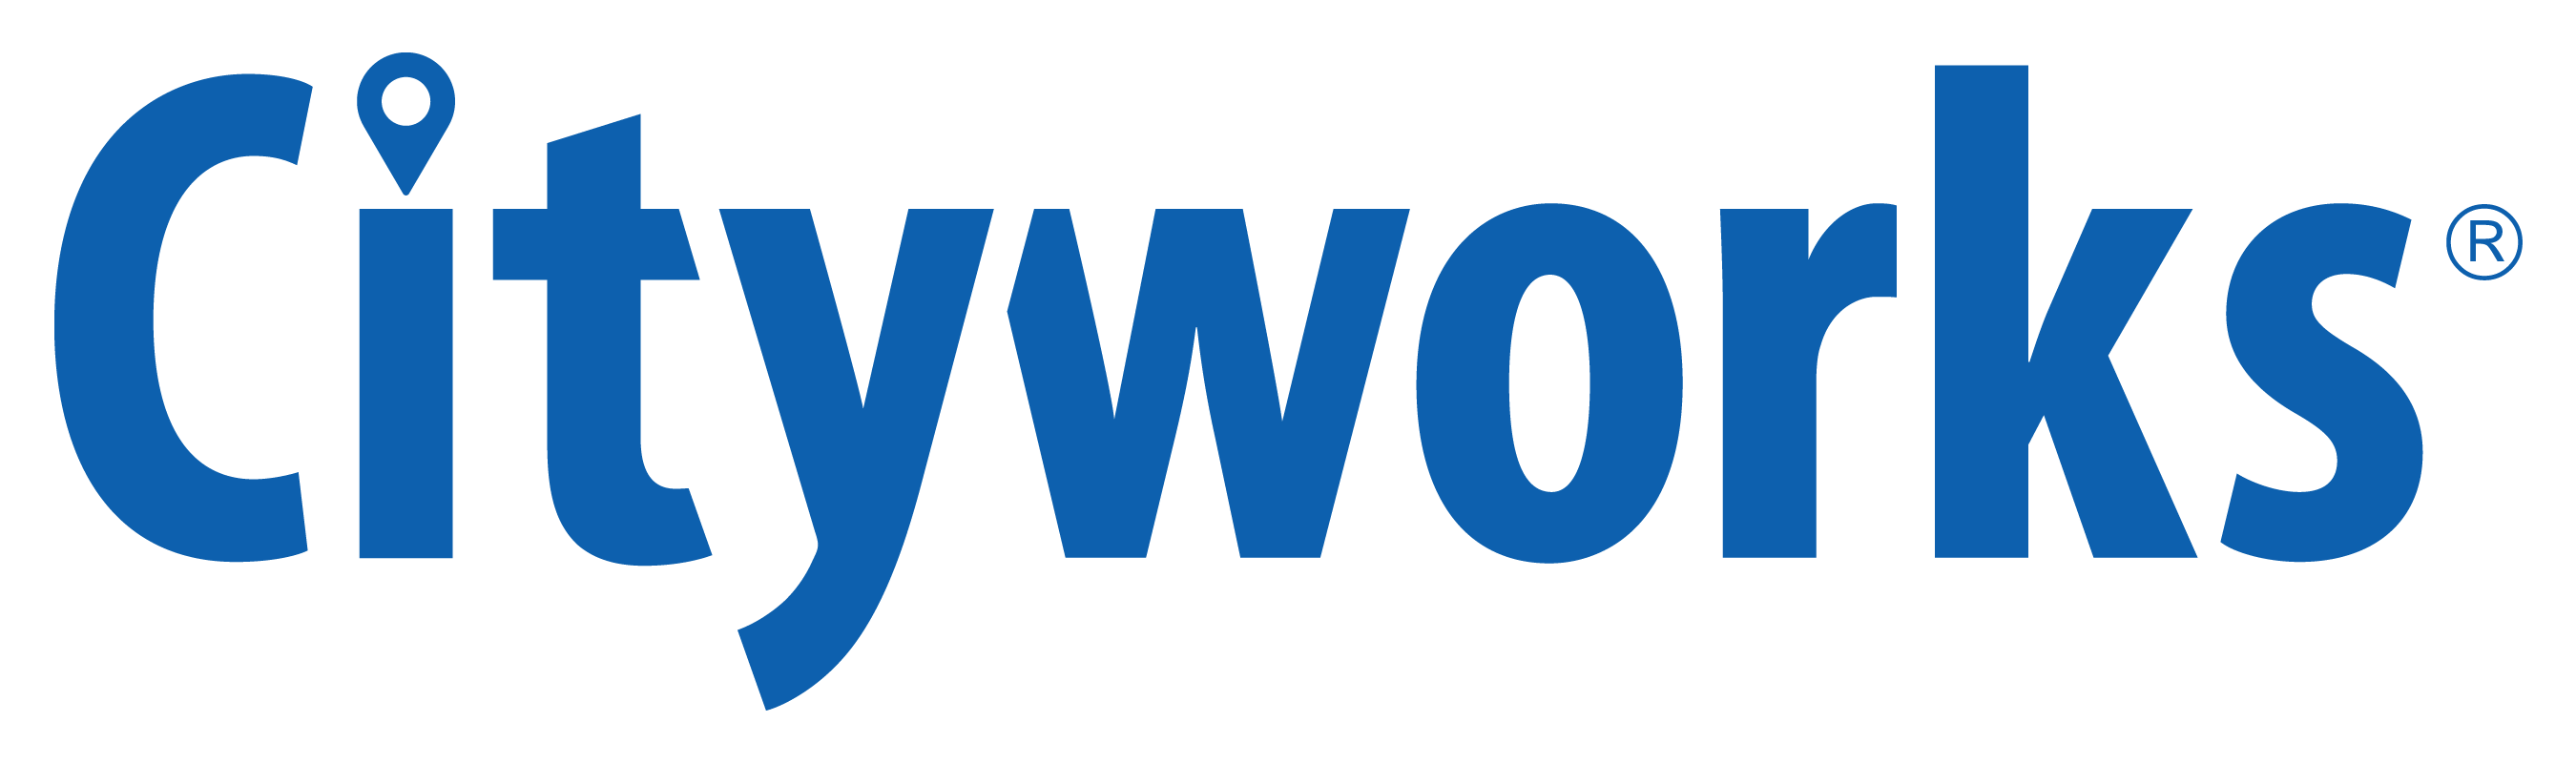 CW - Cityworks Logo - Hi Rez (2800 x 800)